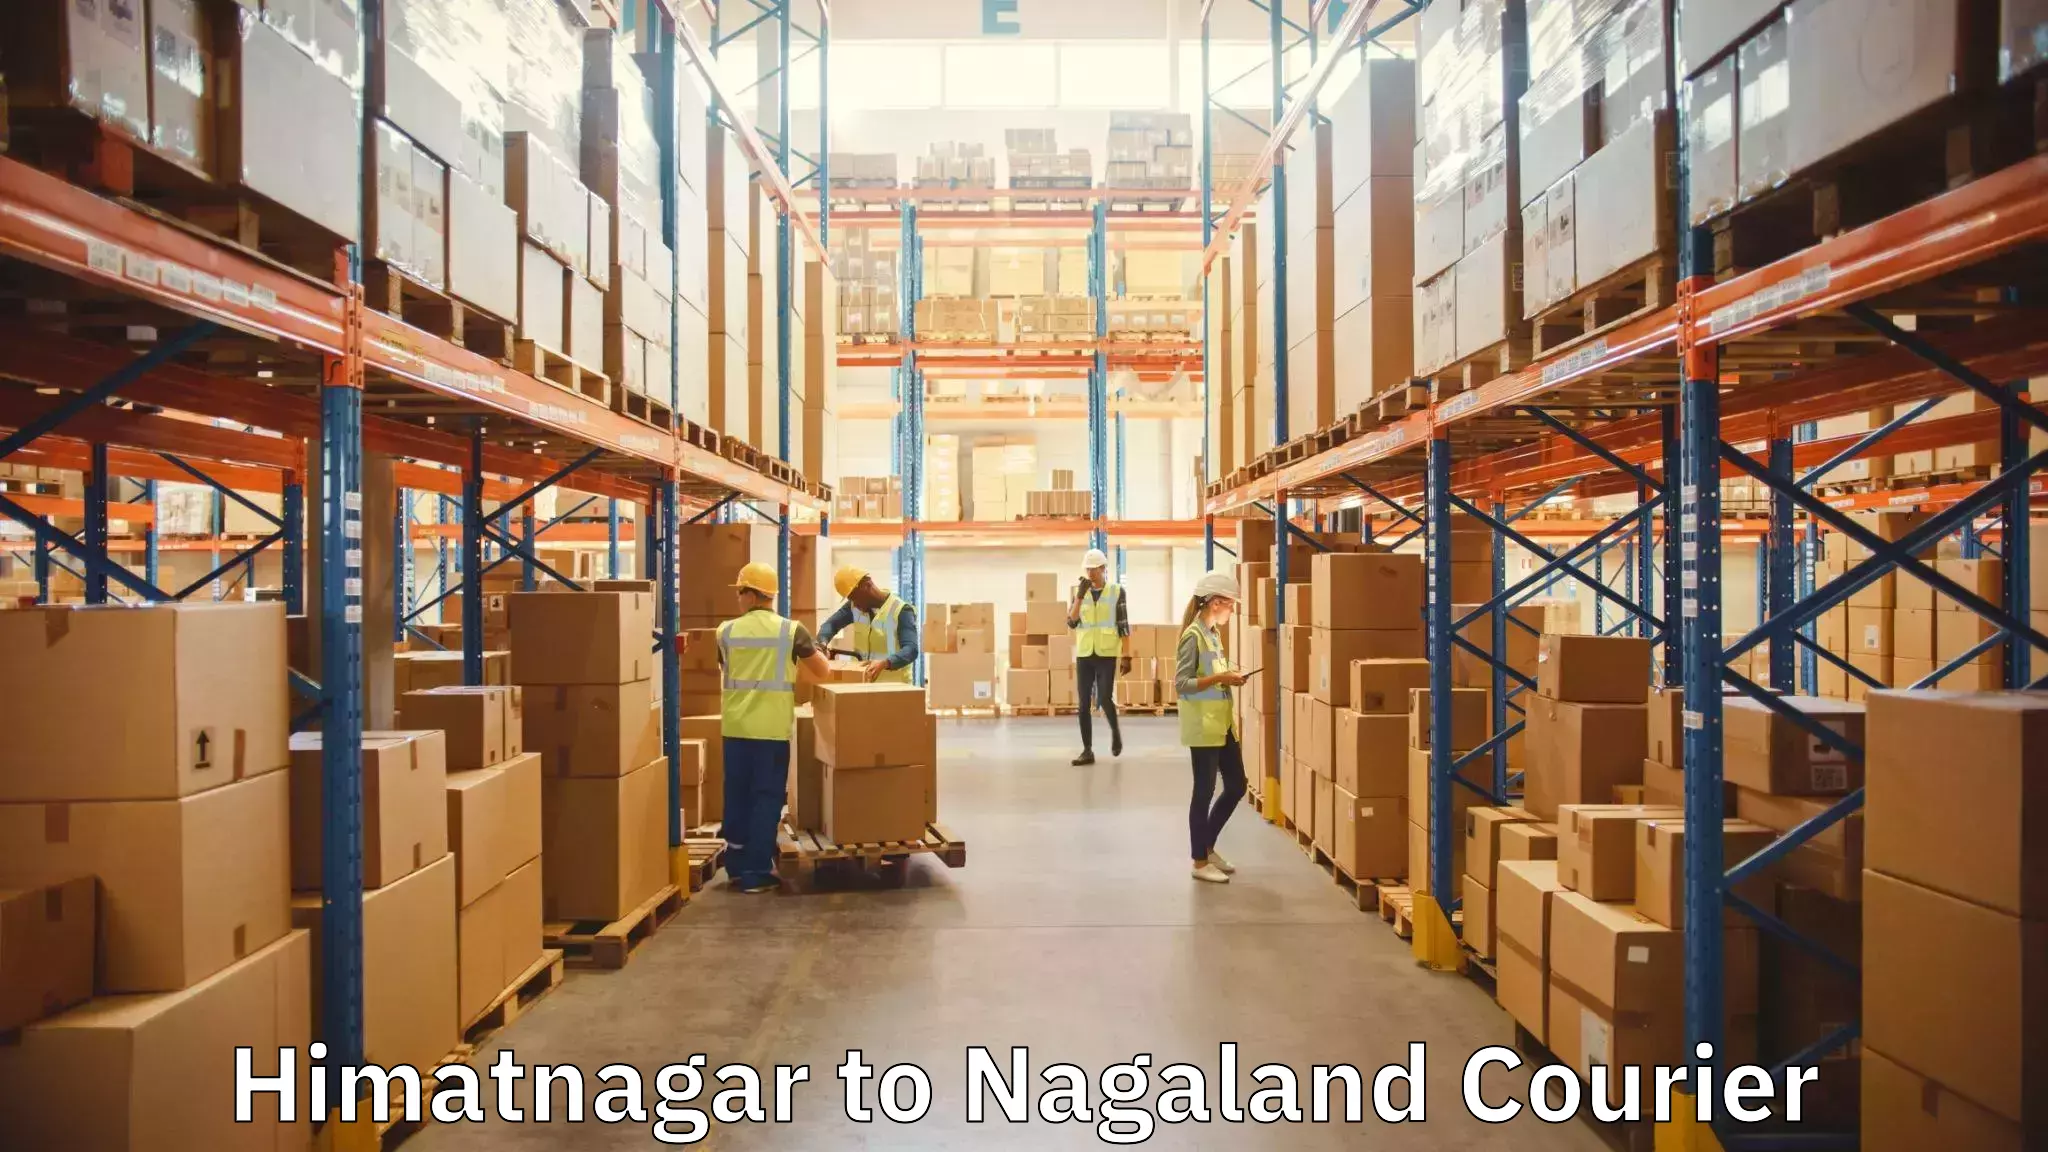 Home moving experts Himatnagar to Nagaland